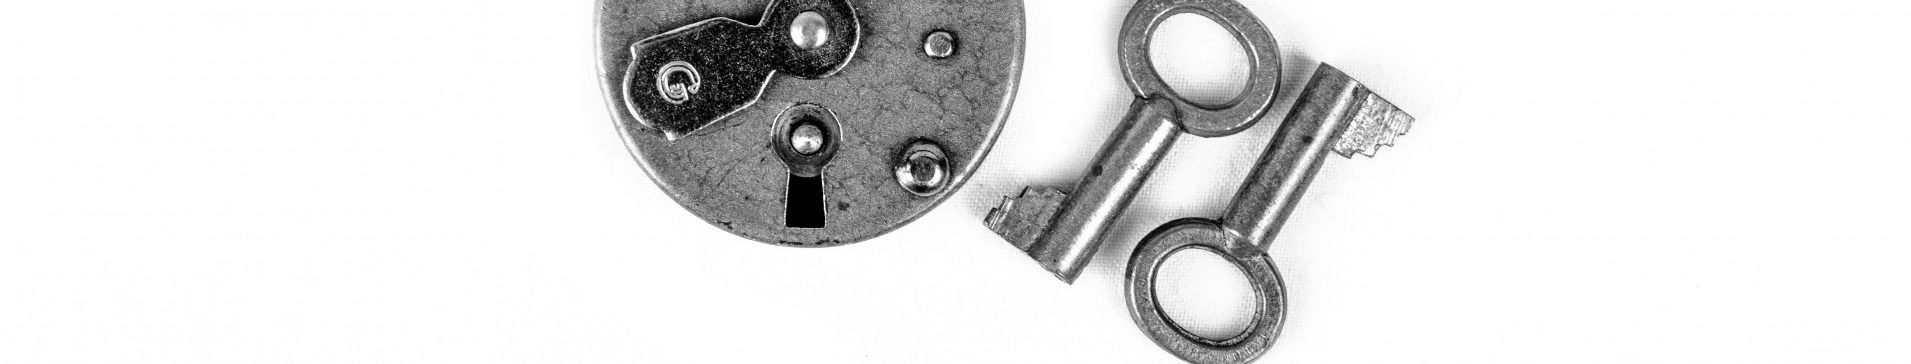 Lock and Keys header